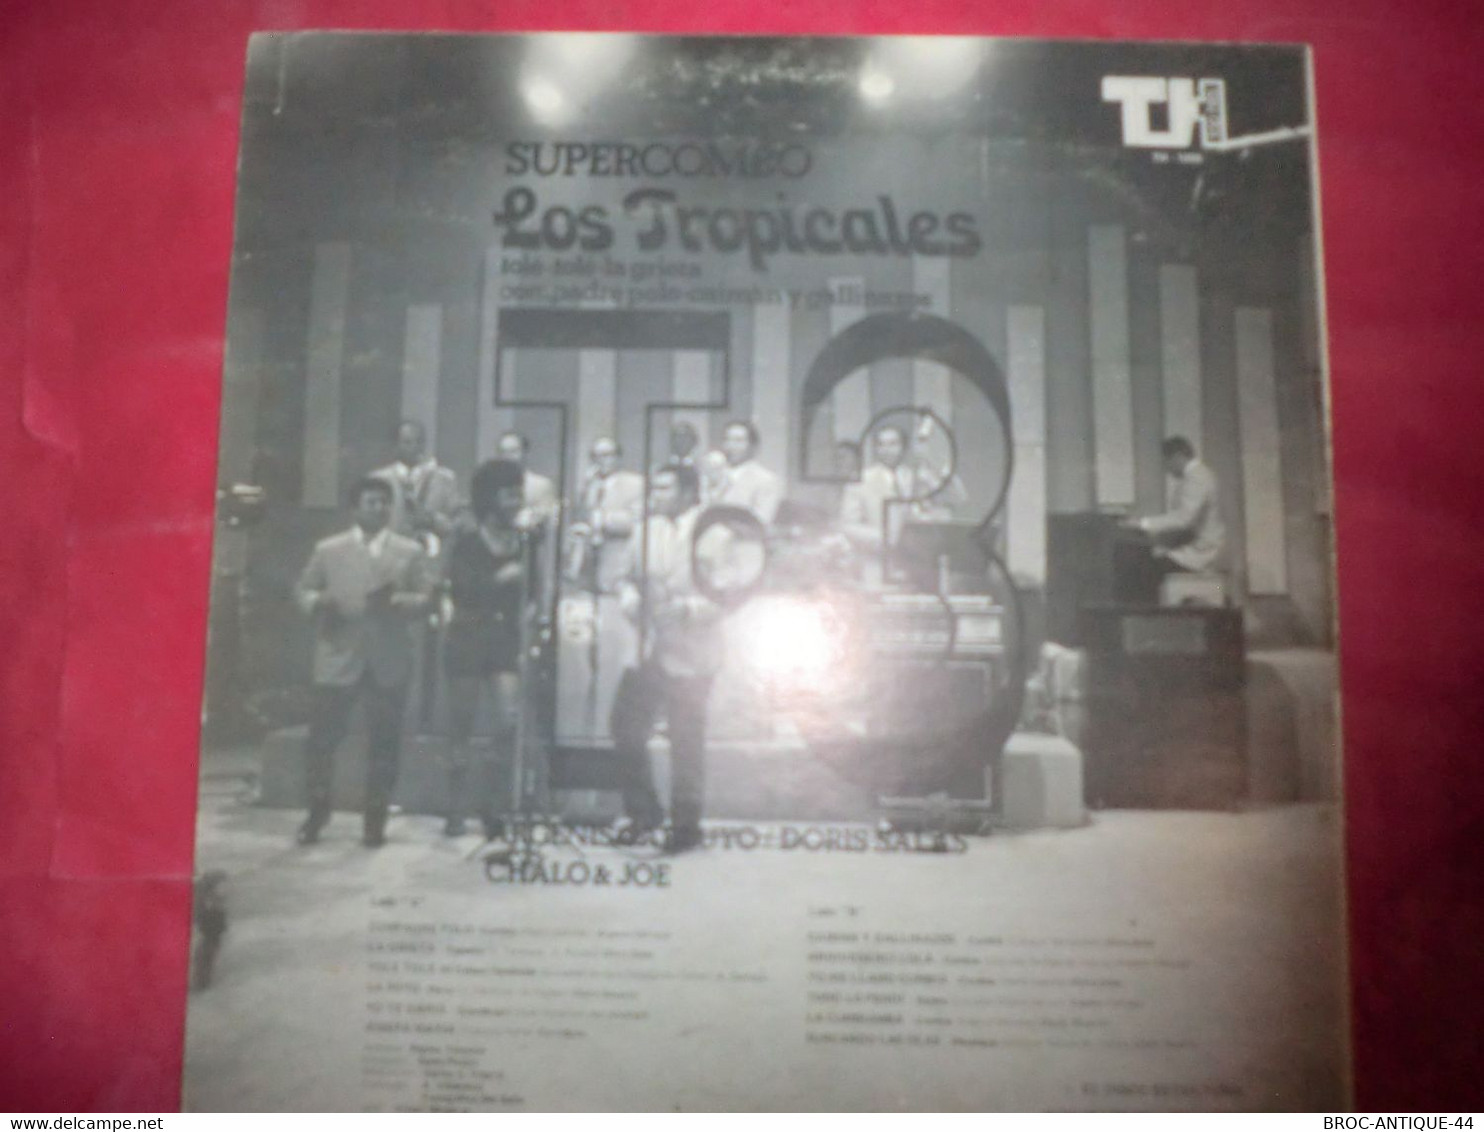 LP33 N°9699 - LOS TROPICALES - TH-1095 - VENEZUELA - Musiques Du Monde